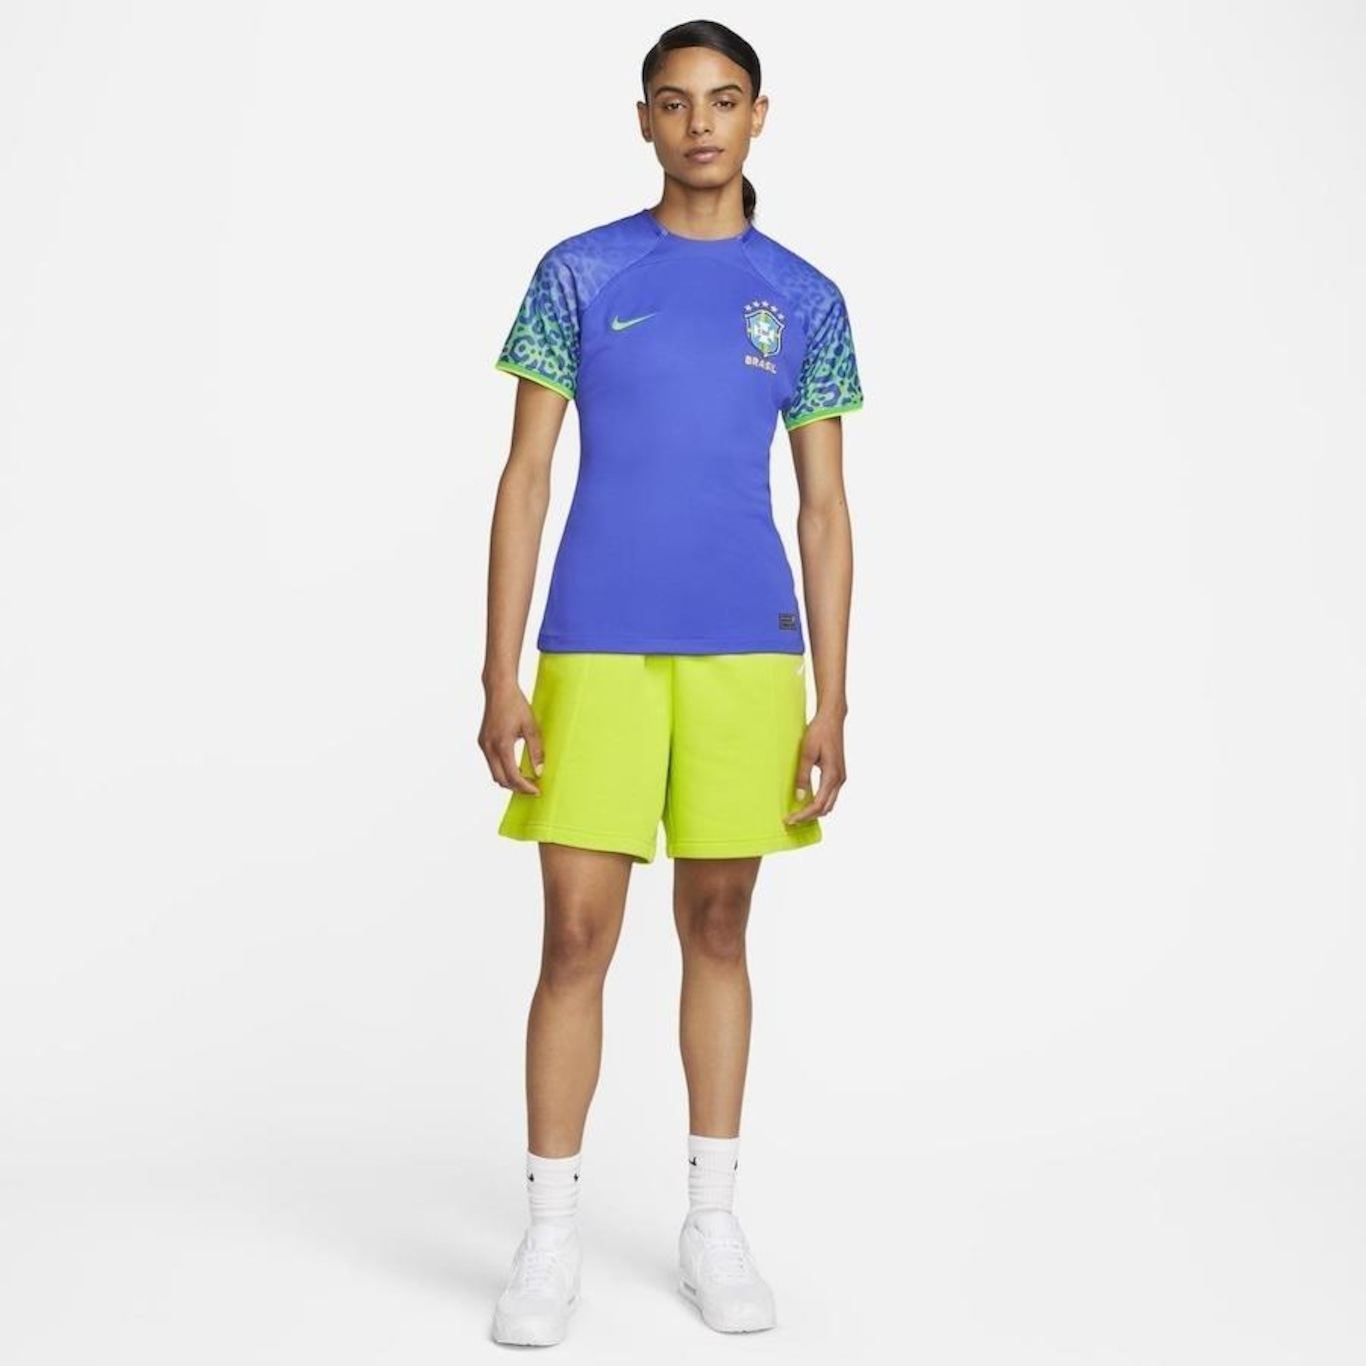 Camisa do Brasil Nike Torcedora Pro I 22/23 - Feminina em Promoção